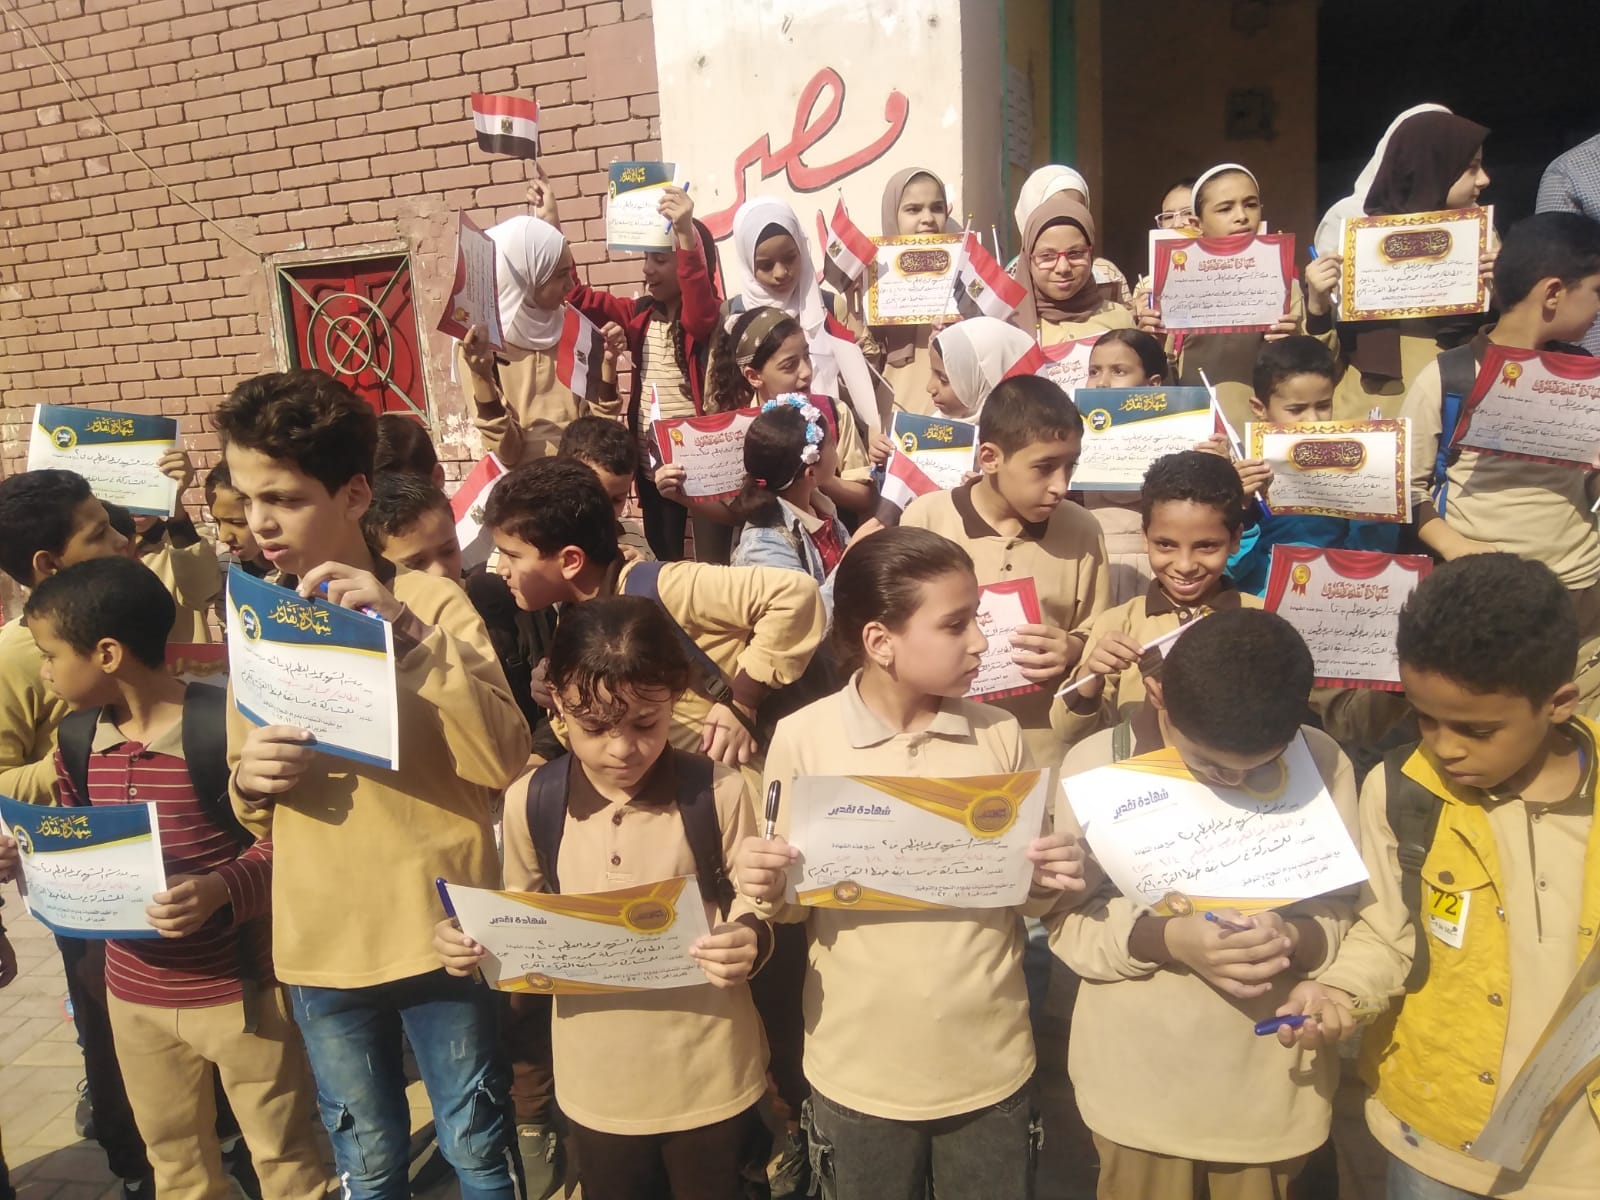 توزيع جوائز مسابقة القرآن الكريم بمدرسة الشهيد محمد عبد العظيم الابتدائية رقم 2 بإدارة المعصرة